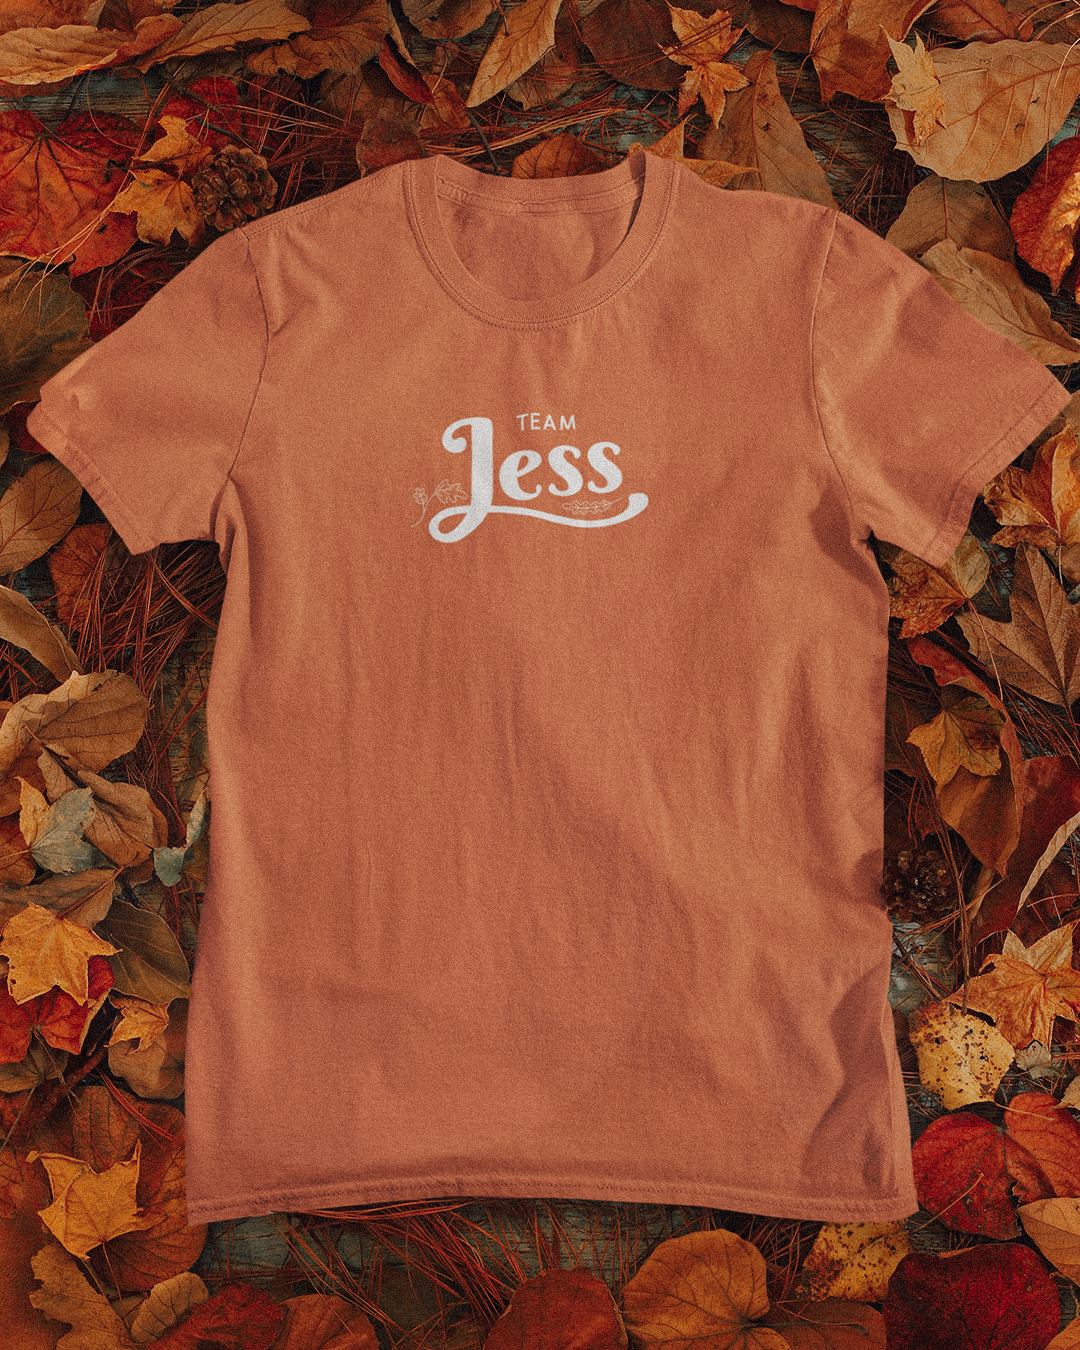 Team Jess Mariano T-Shirt - Gilmore Girls Inspired T-Shirt - Rory Gilmore's Boyfriends - Team Jess Mariano Gilmore Girls Inspired T-Shirt